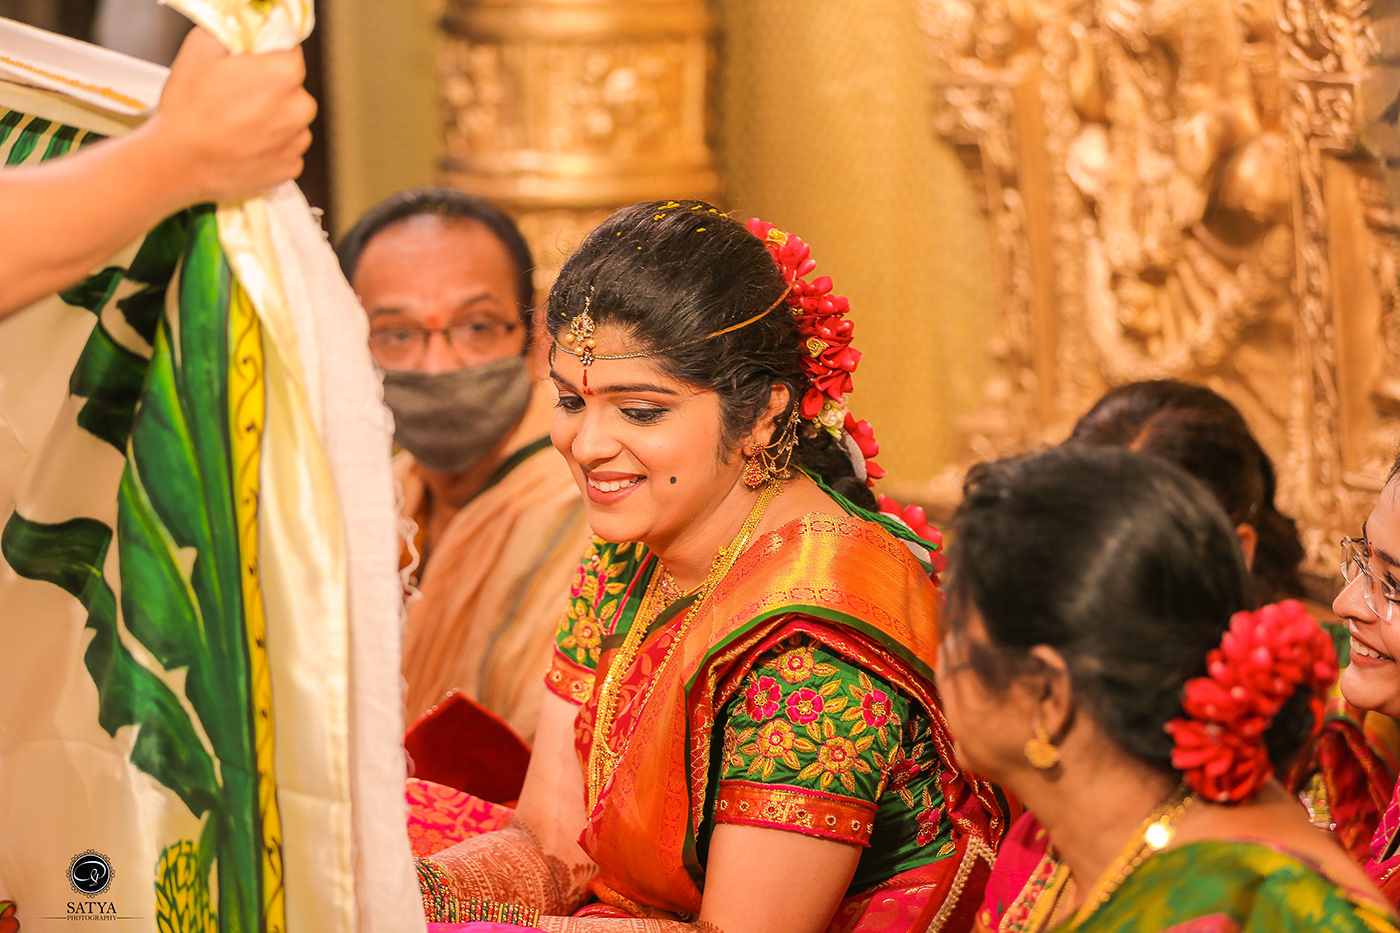 bestweddingphotography indianweddings Photography  telugu weddingphotography Weddings bride couple indian bride indian wedding